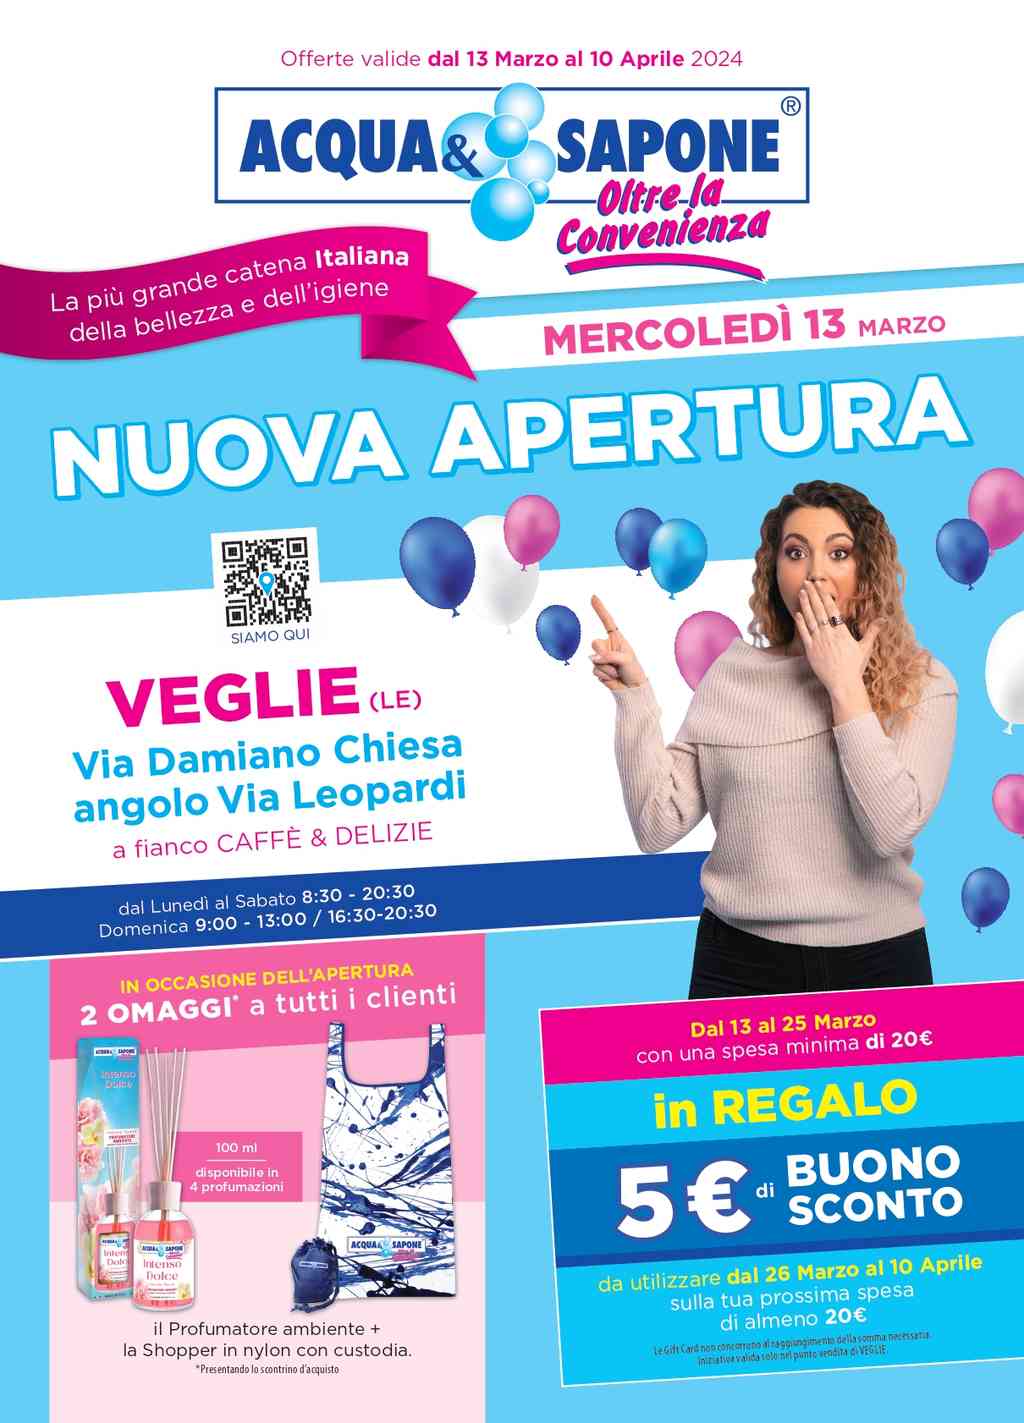 Volantino Acqua e Sapone nuova apertura a Veglie dal 13 marzo al 10 aprile 2024